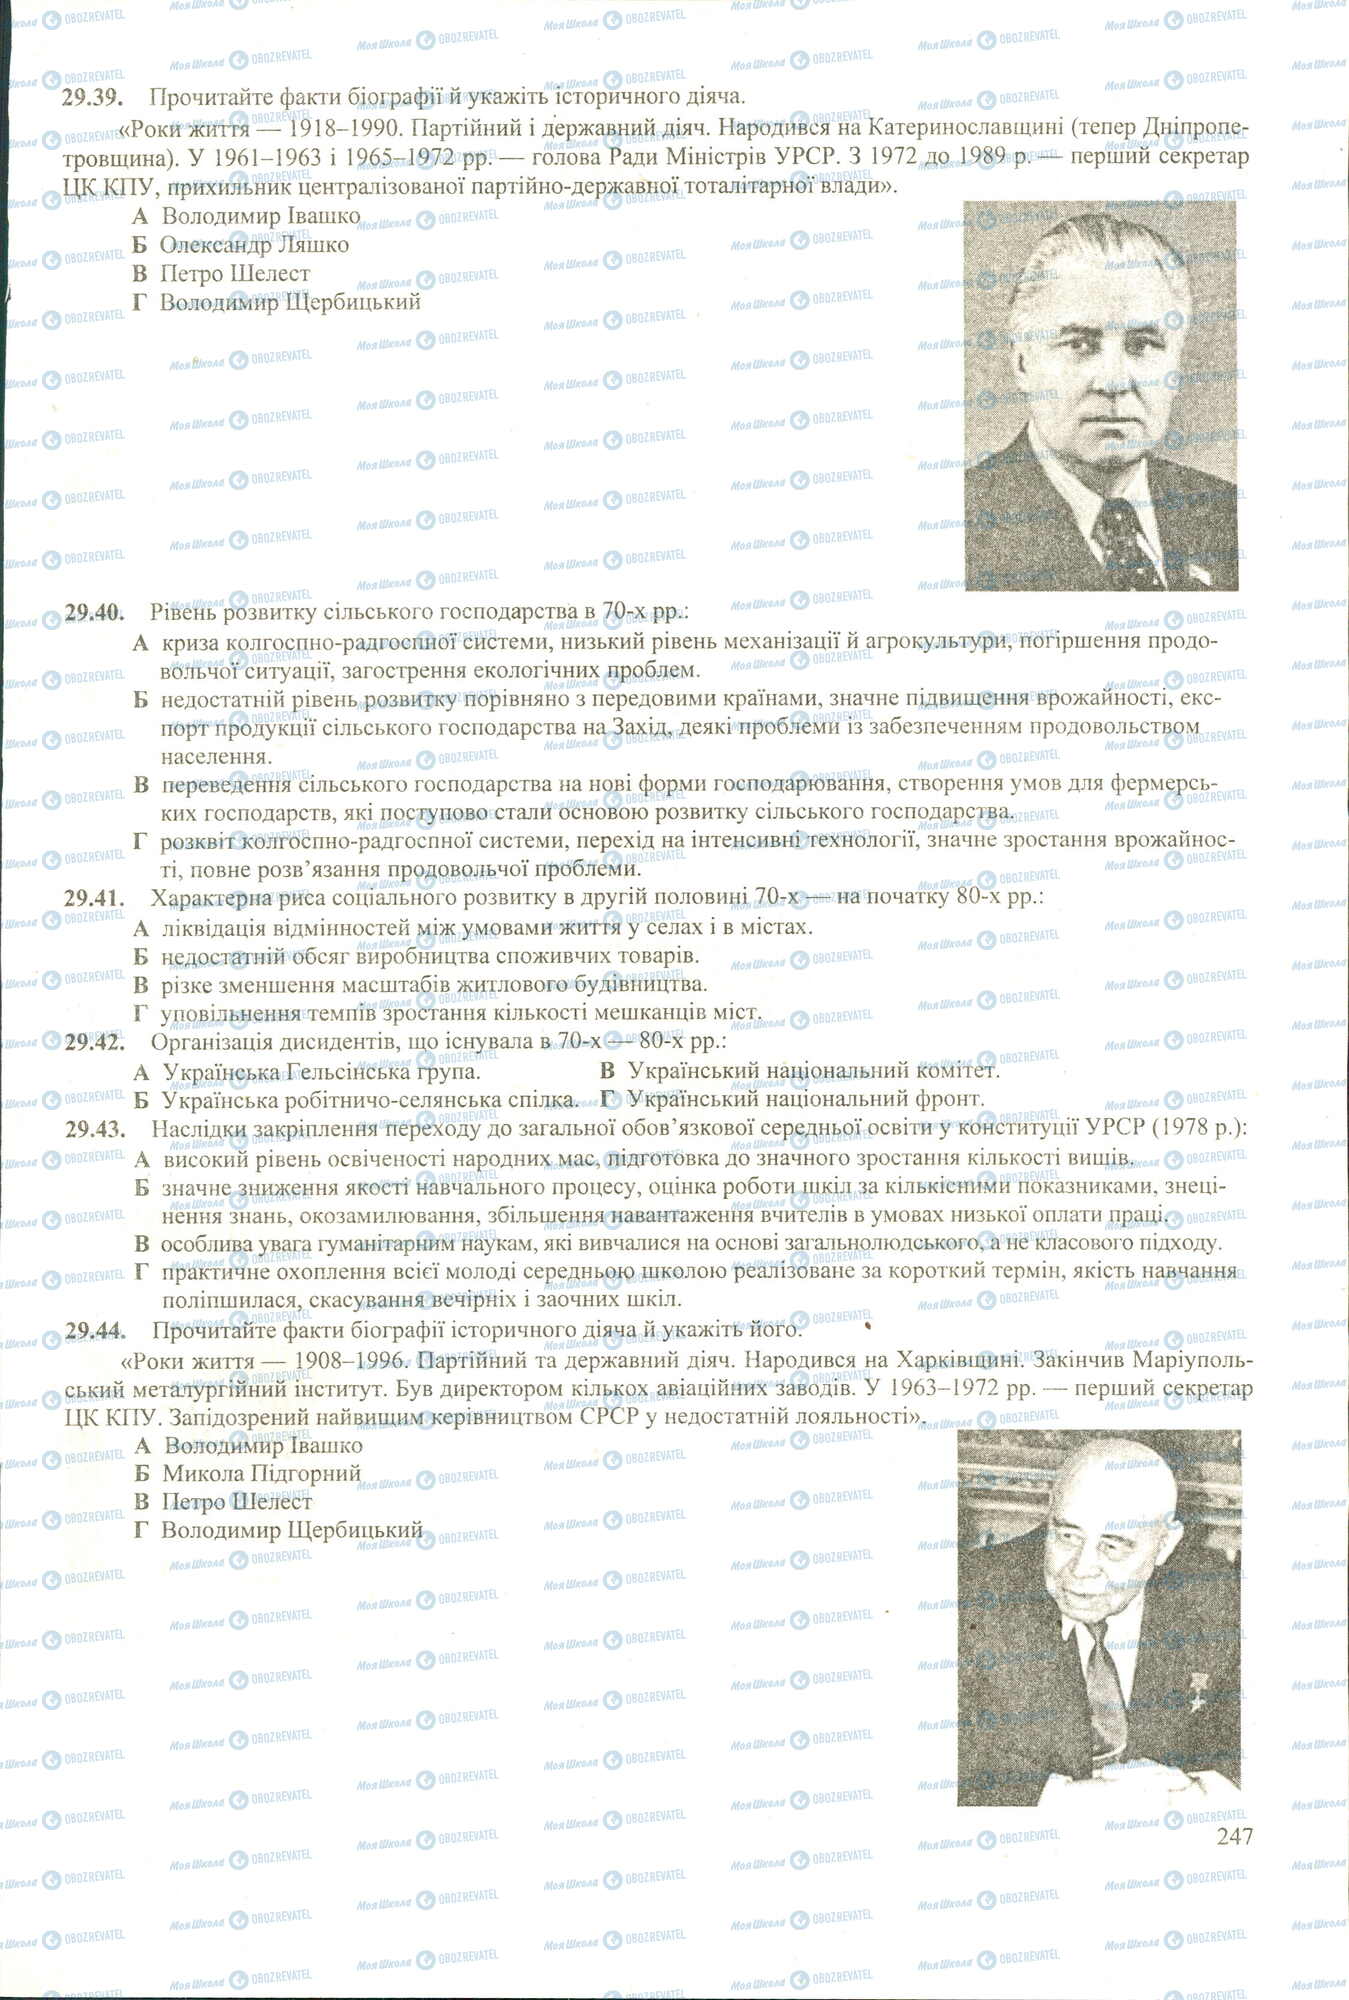 ЗНО История Украины 11 класс страница 39-44